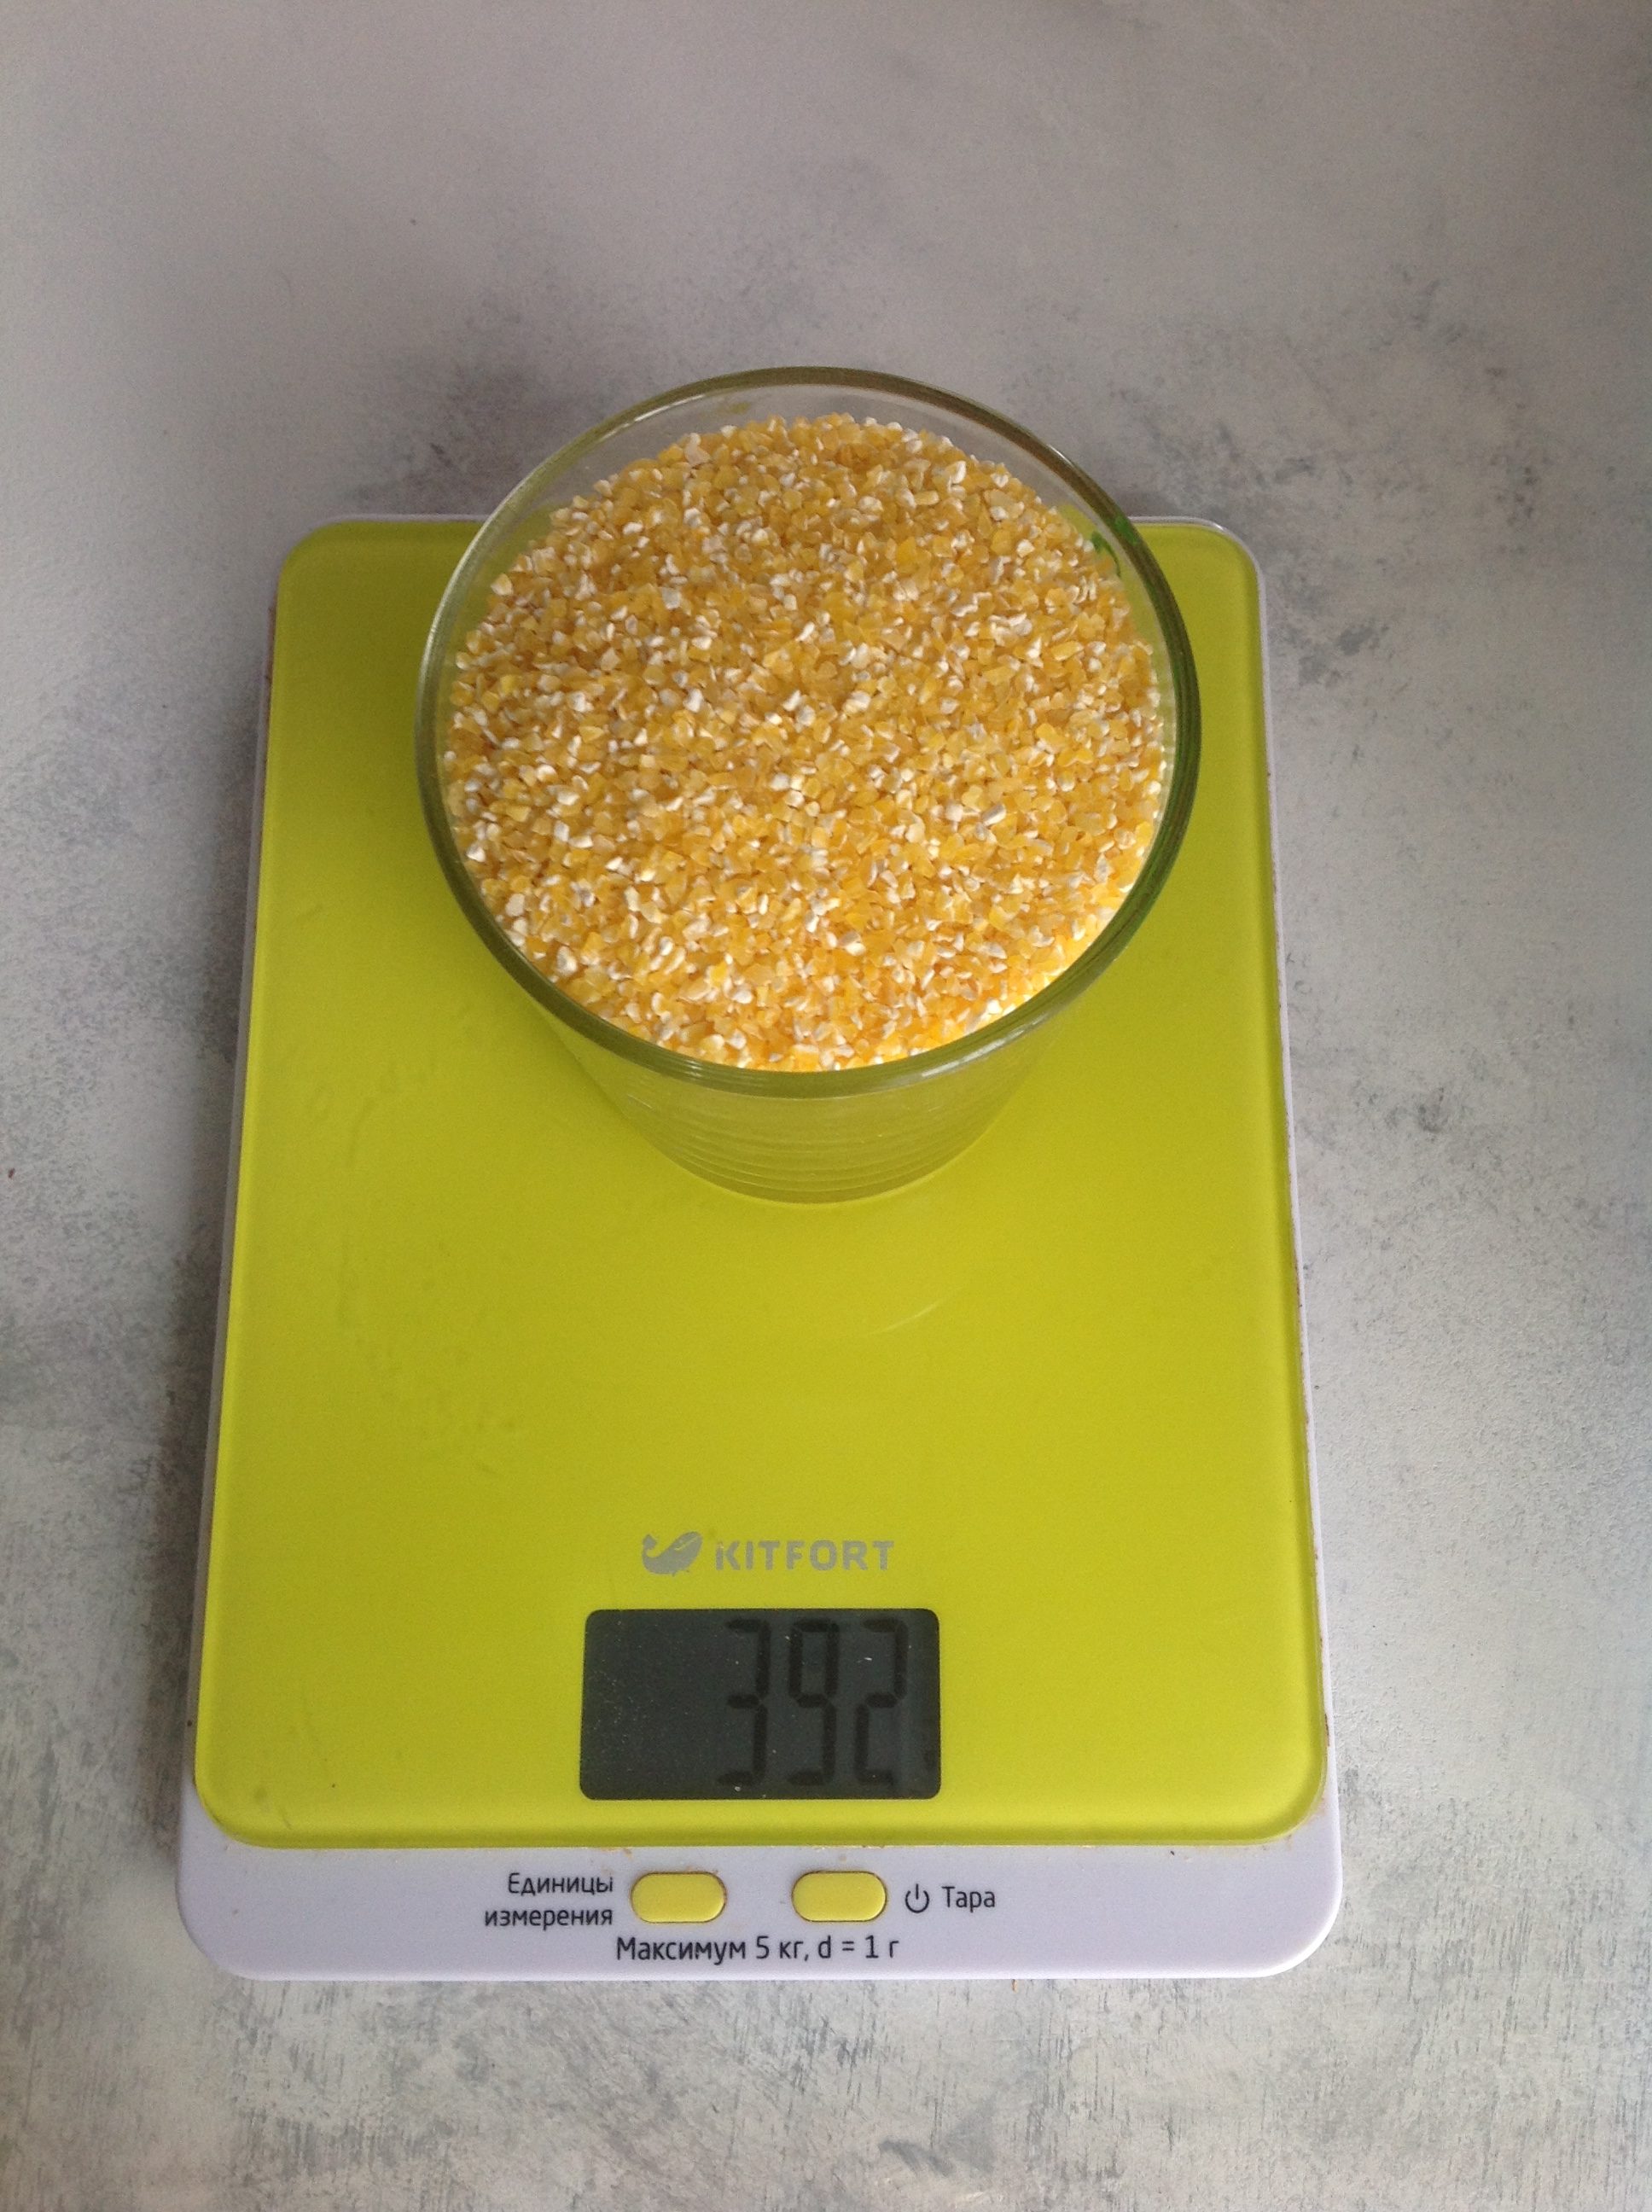 Колко тежи изсушеното царевично брашно в чаша от 250 ml?